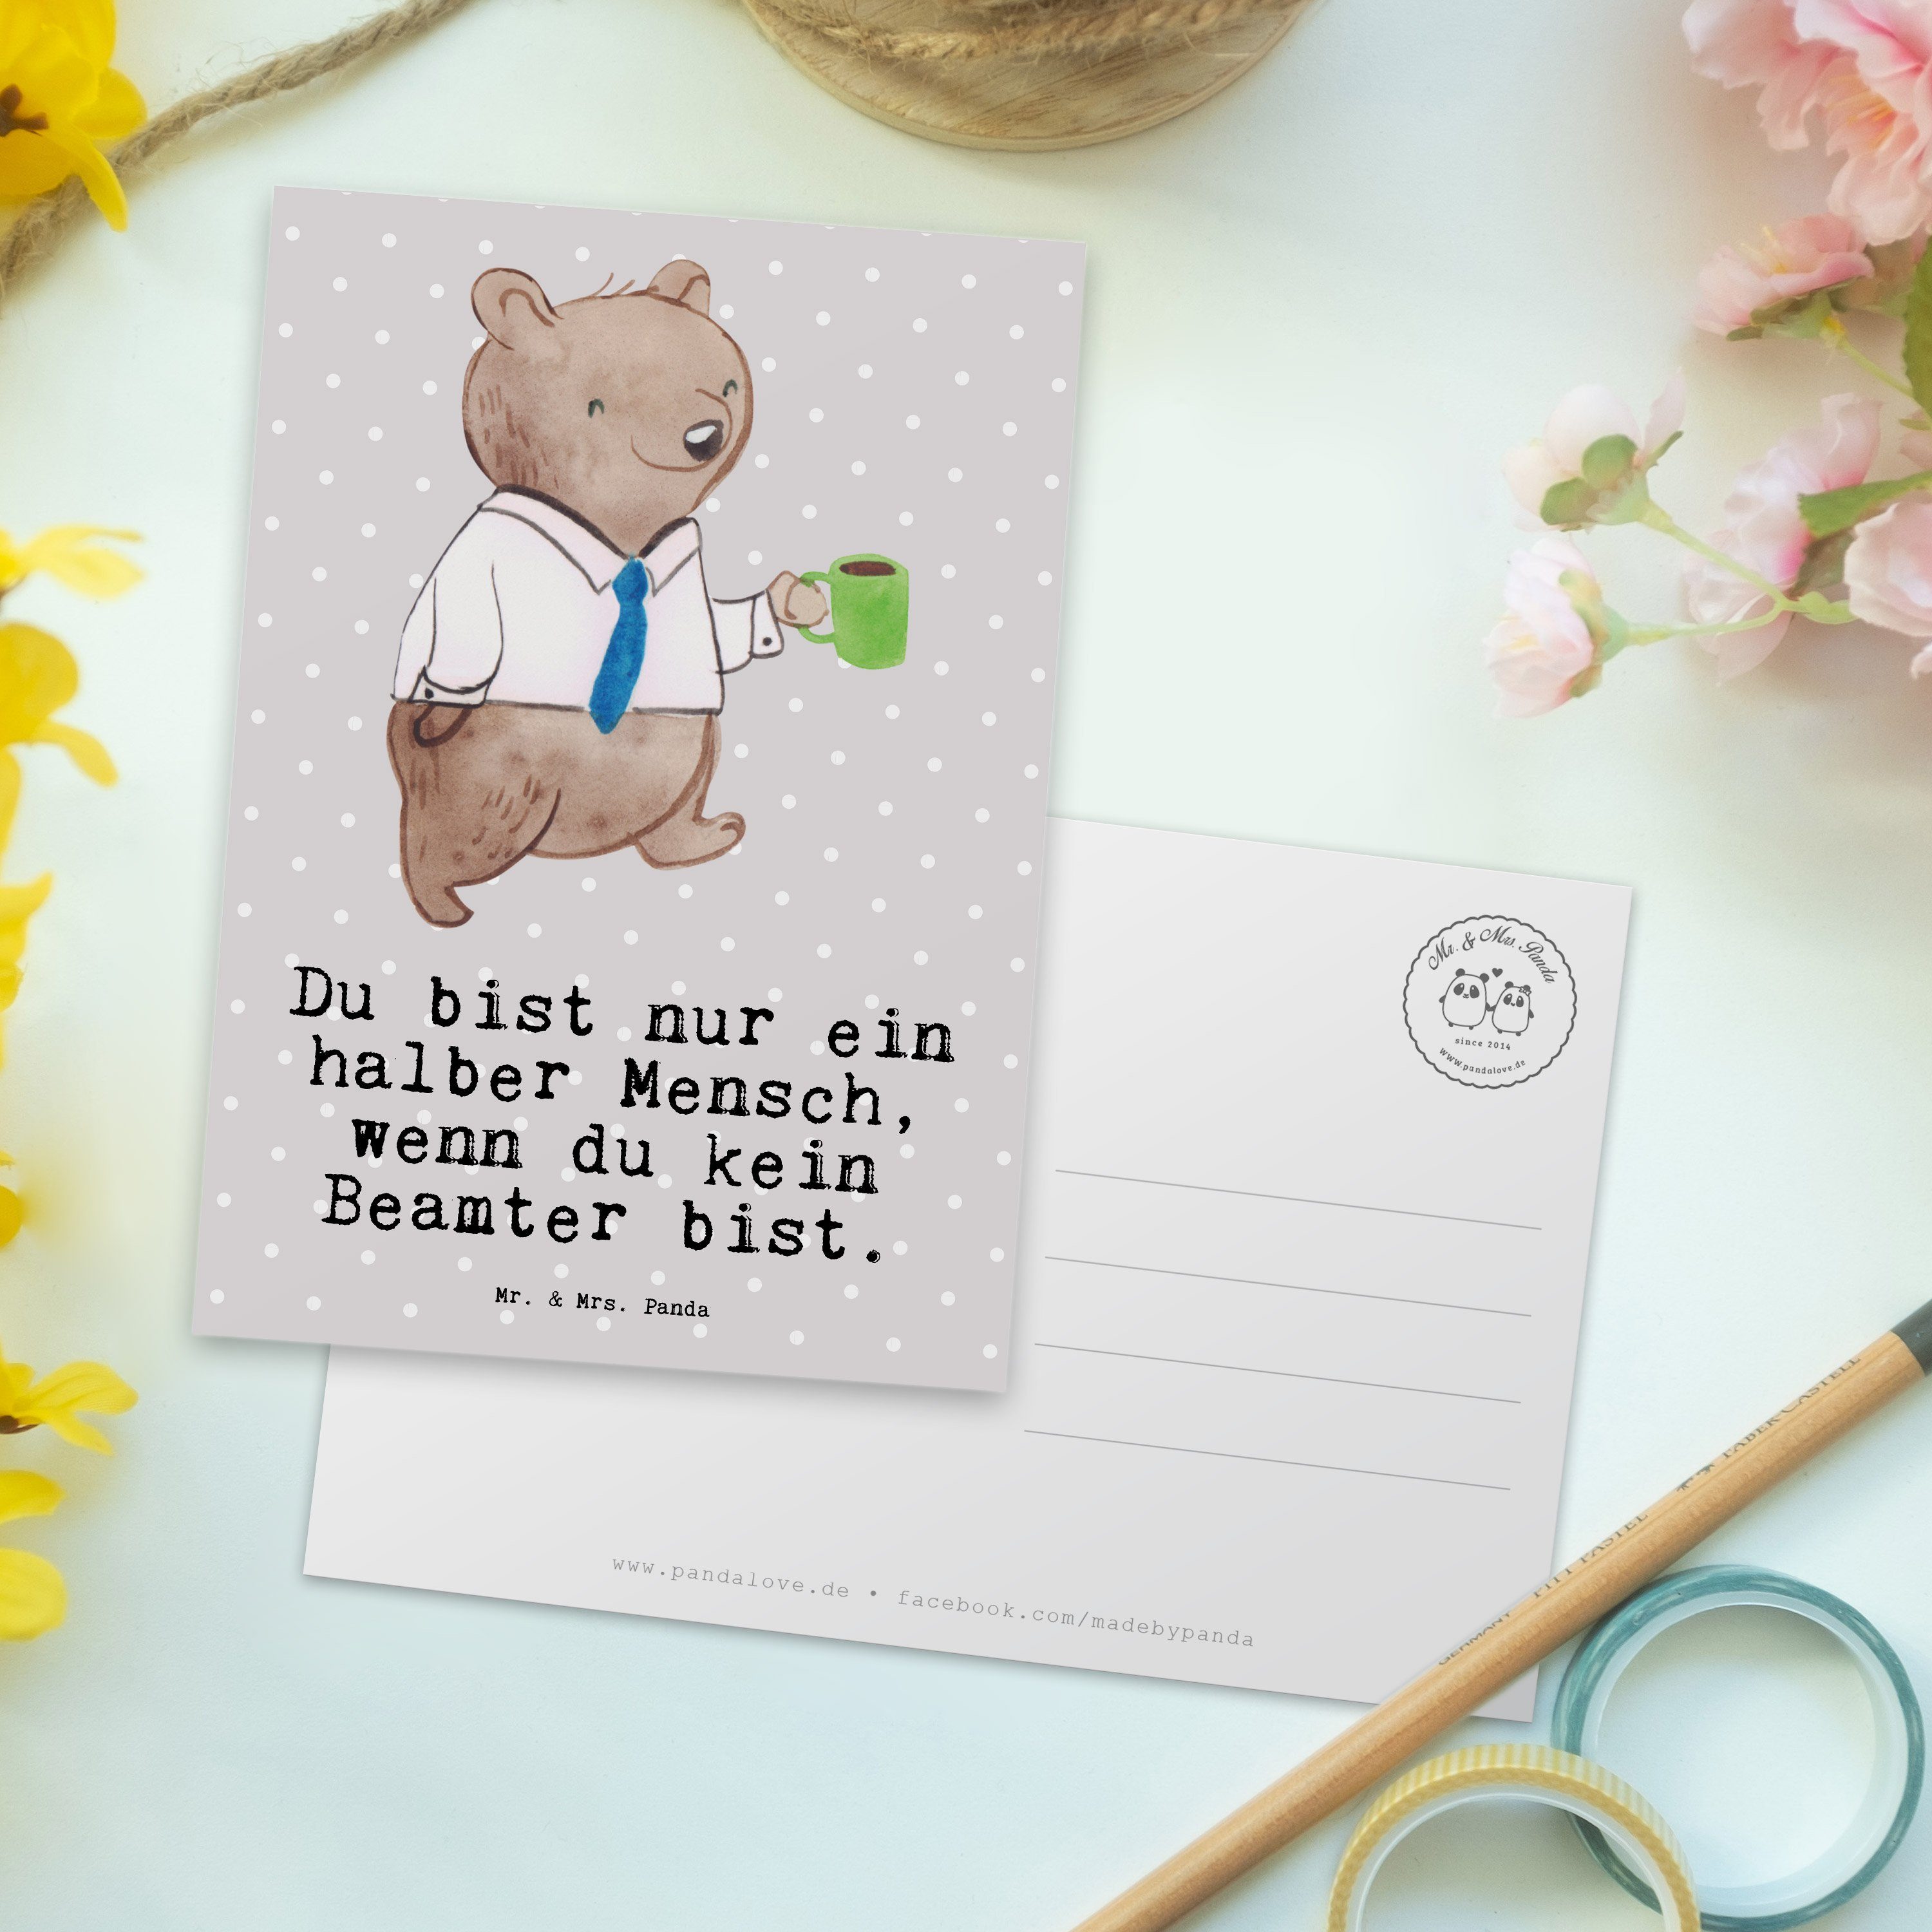 Mr. & Mrs. Panda Postkarte Beamter mit Herz - Grau Pastell - Geschenk, Grußkarte, Schenken, Gebu